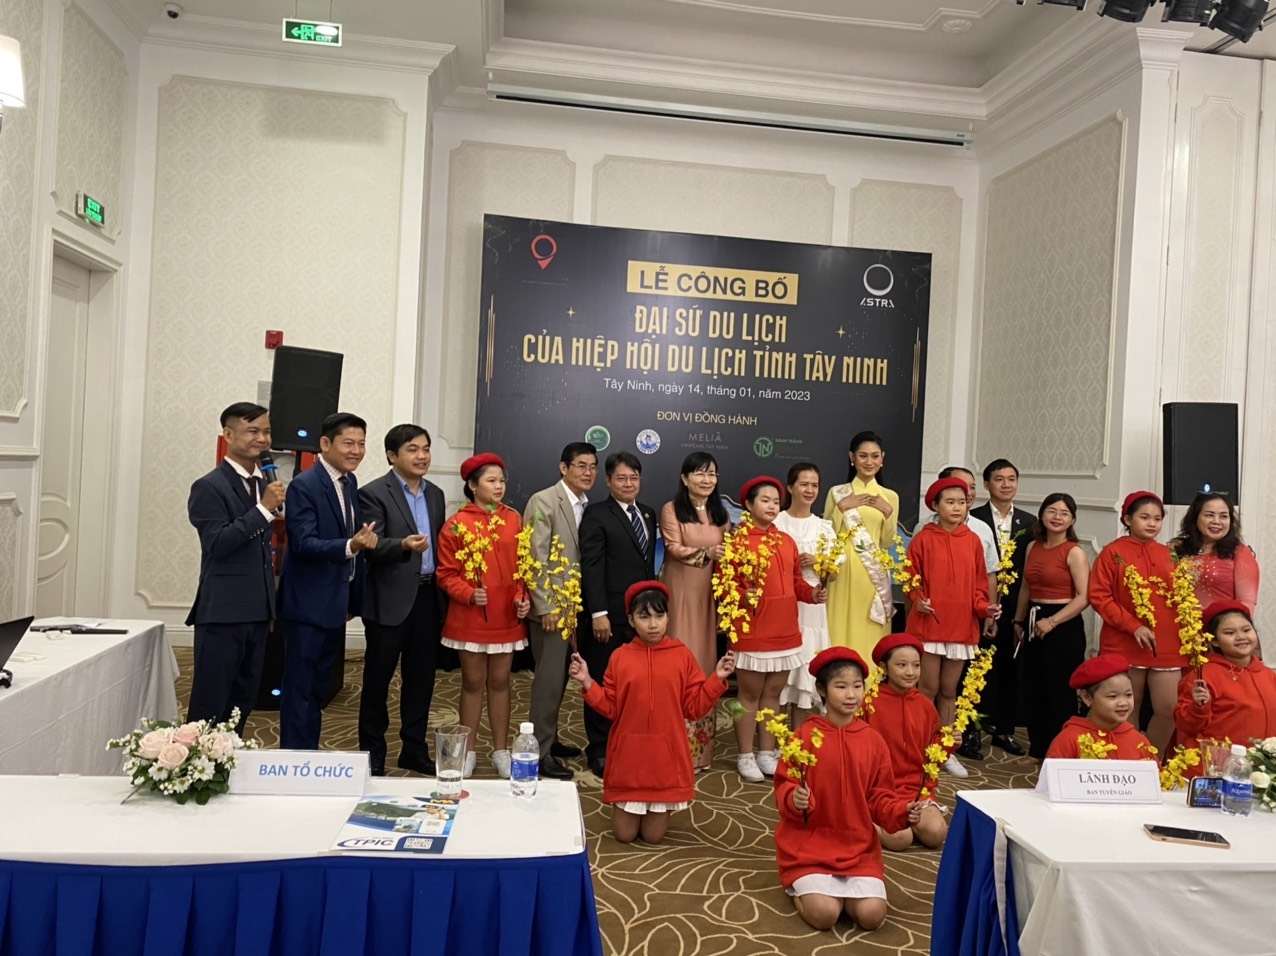 Á Hậu 1 Du Lịch Việt Nam 2022 làm Đại sứ Du lịch Tây Ninh 2023